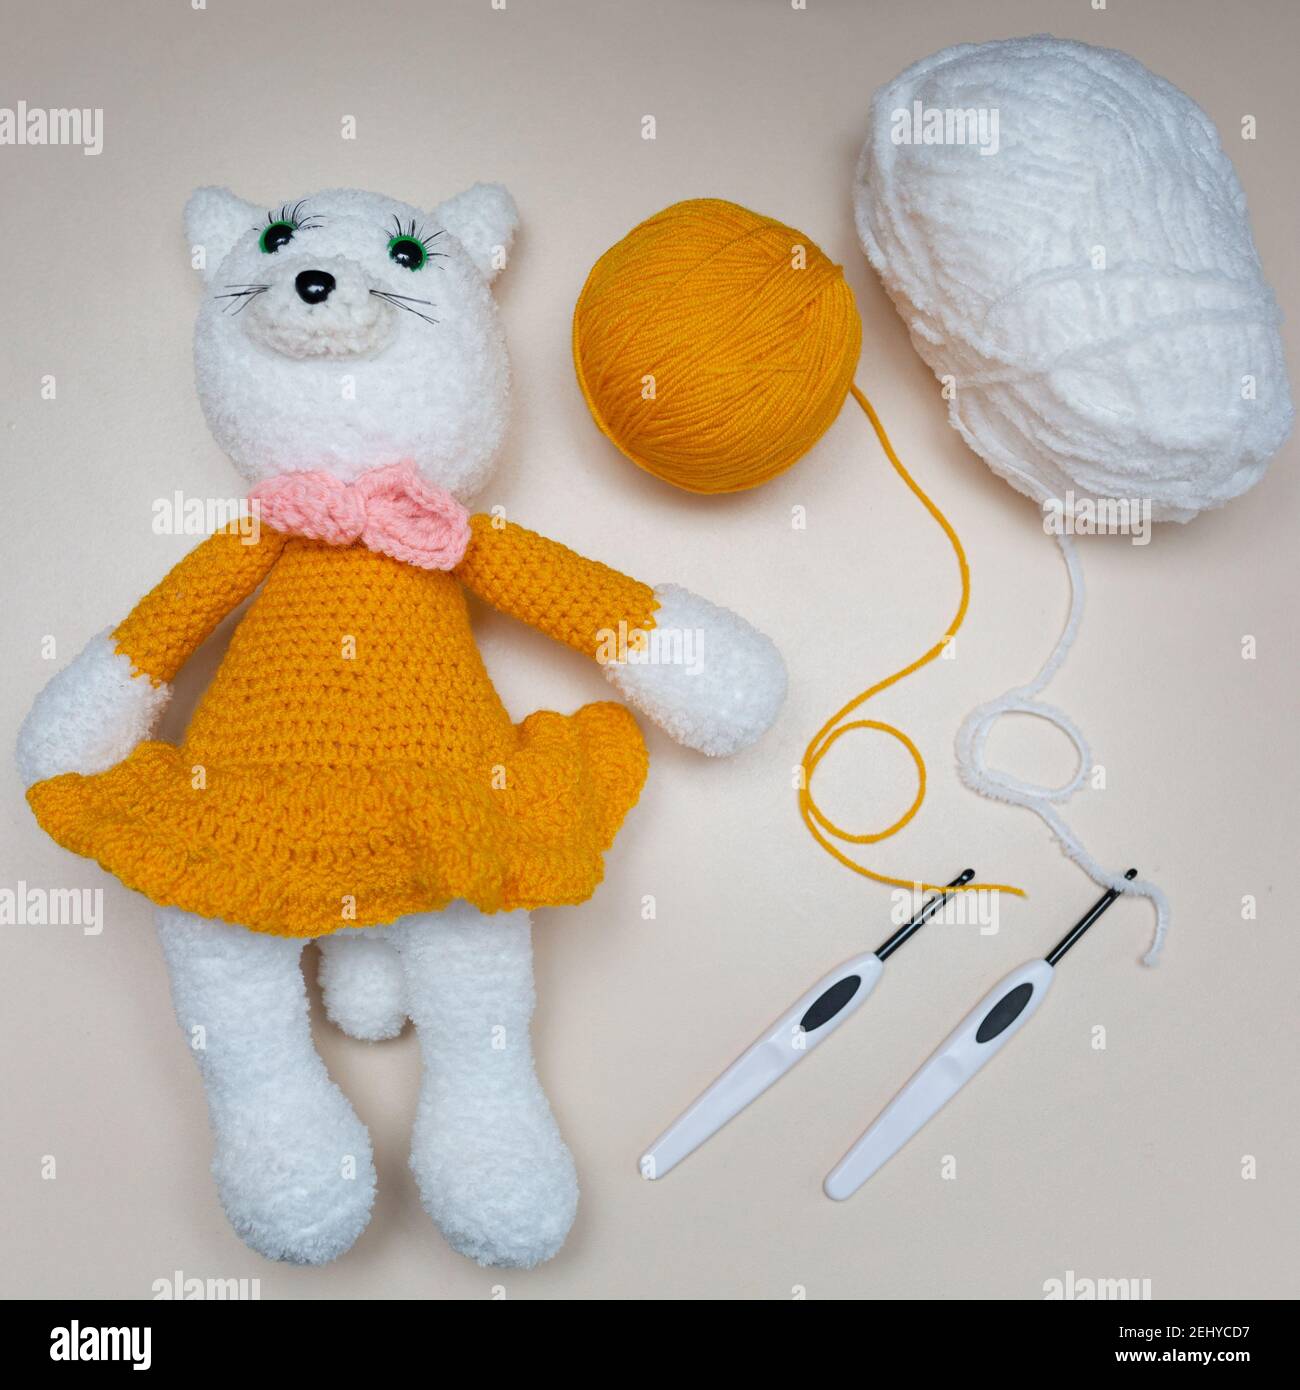 Jouet tricoté fait à la main. Jouet souris blanche dans une jupe orange avec des aiguilles tricotées sur un fond gris. Animaux en peluche crochetés. Banque D'Images